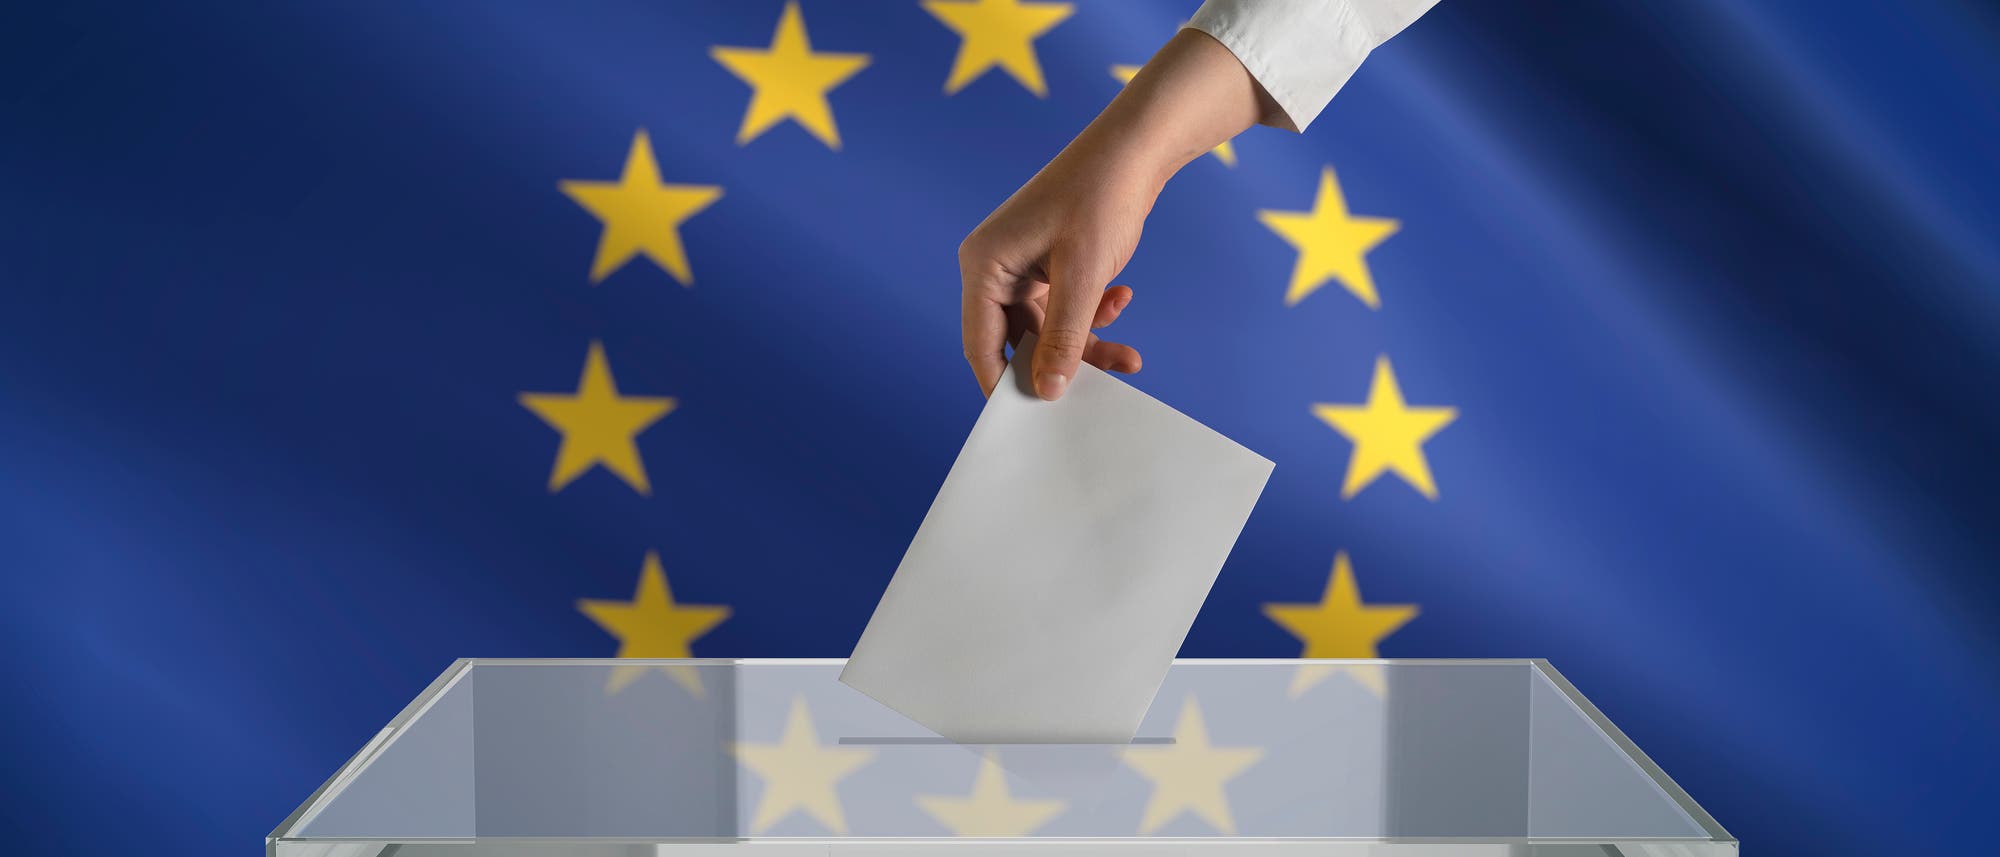 Eine Hand wirft einen Zettel in einen durchsichtigen Kasten. Im Hintergrund die Europaflagge.